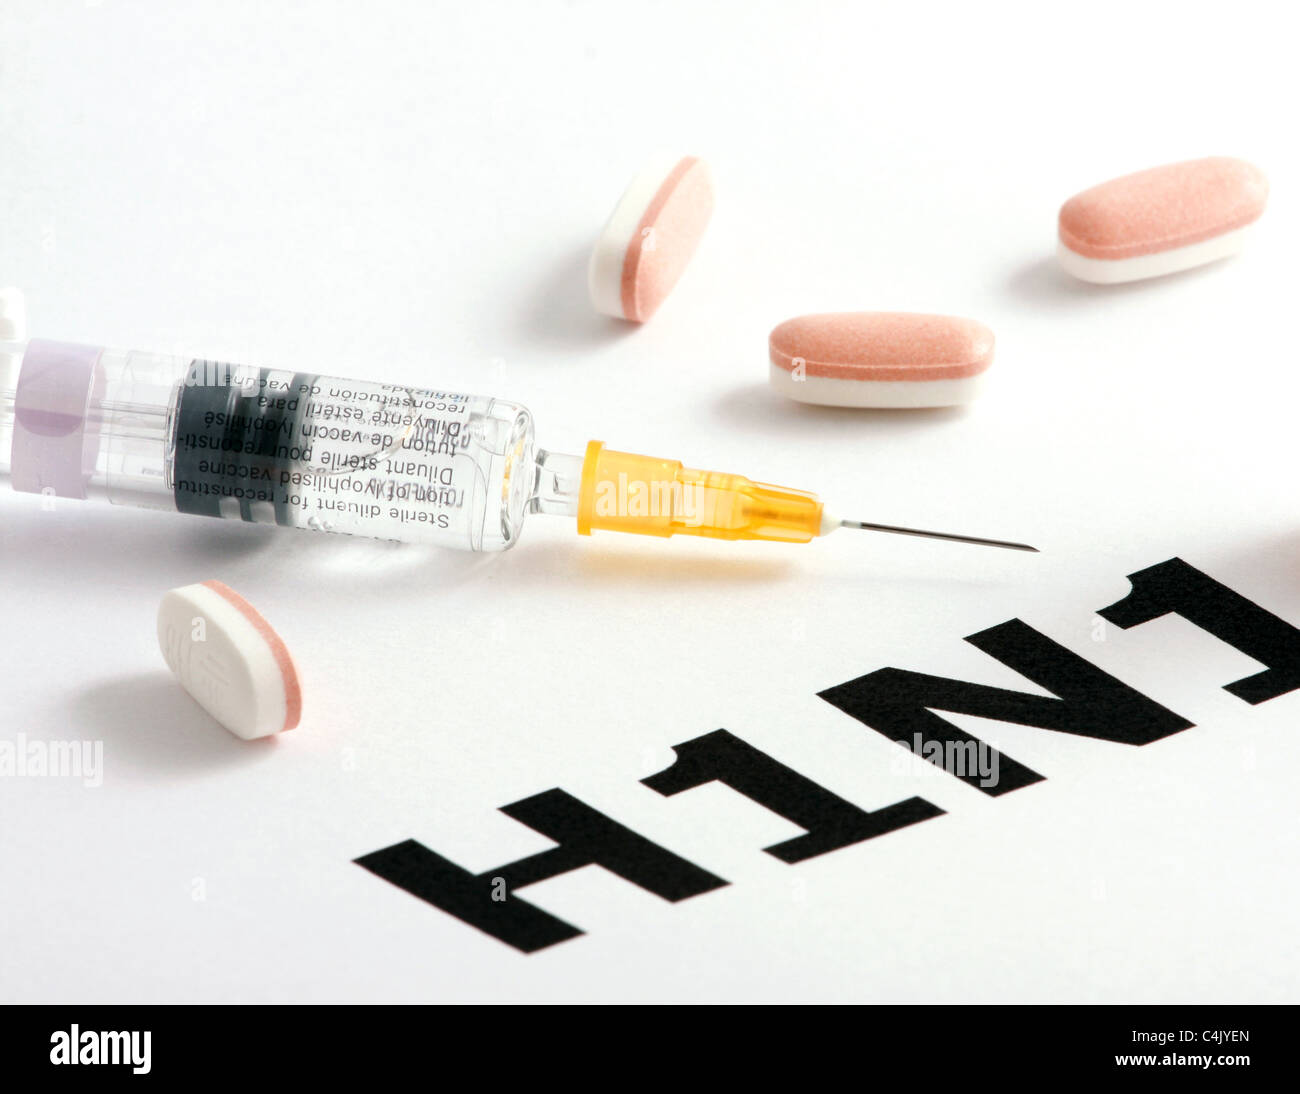 H1N1 Influenza Virus Stock Photo